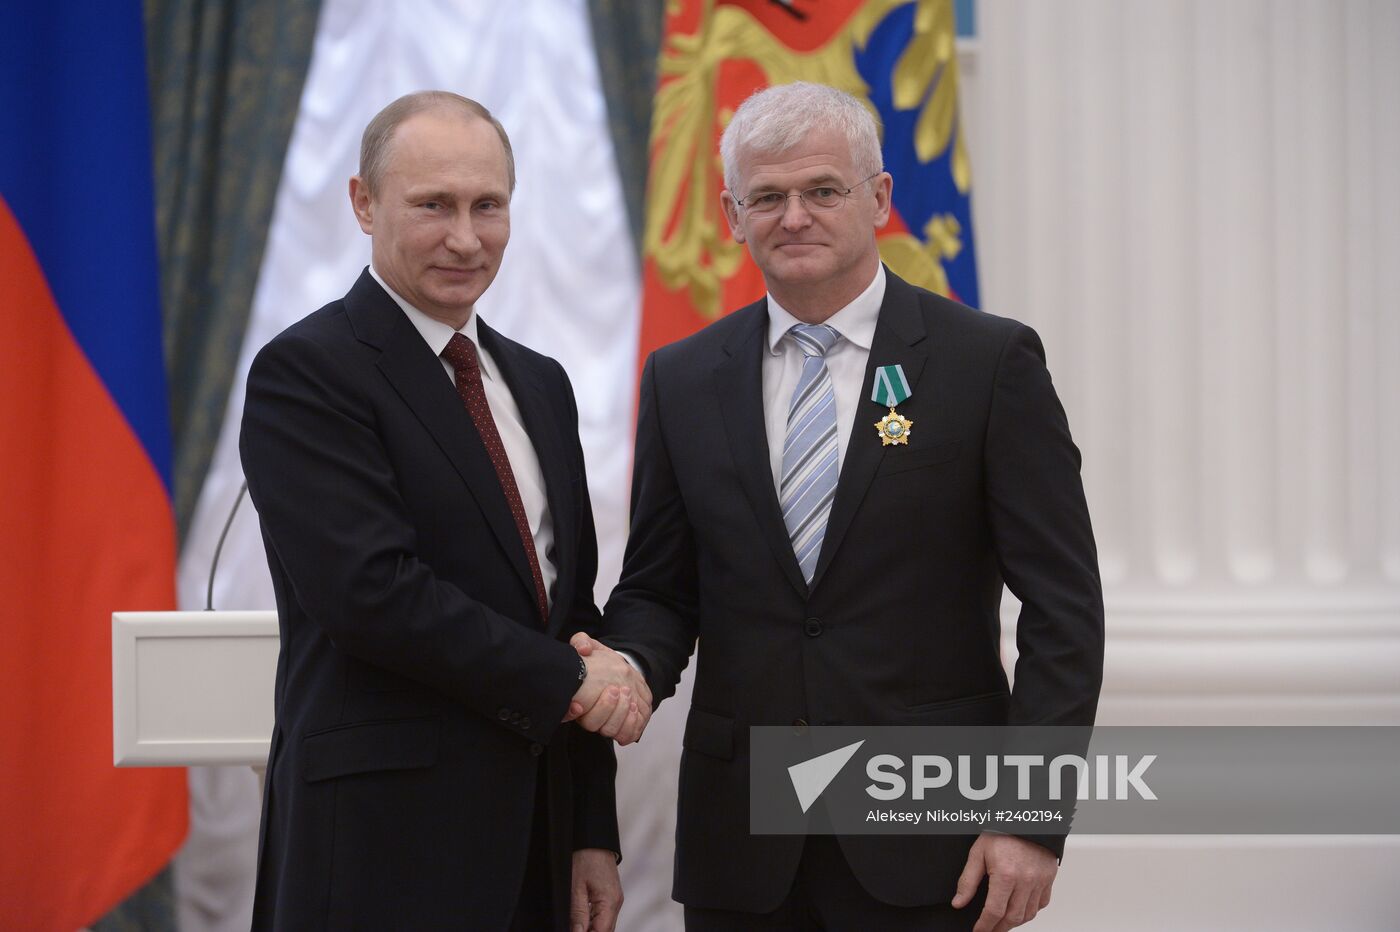 Vladimir Putin presents state awards in Kremlin